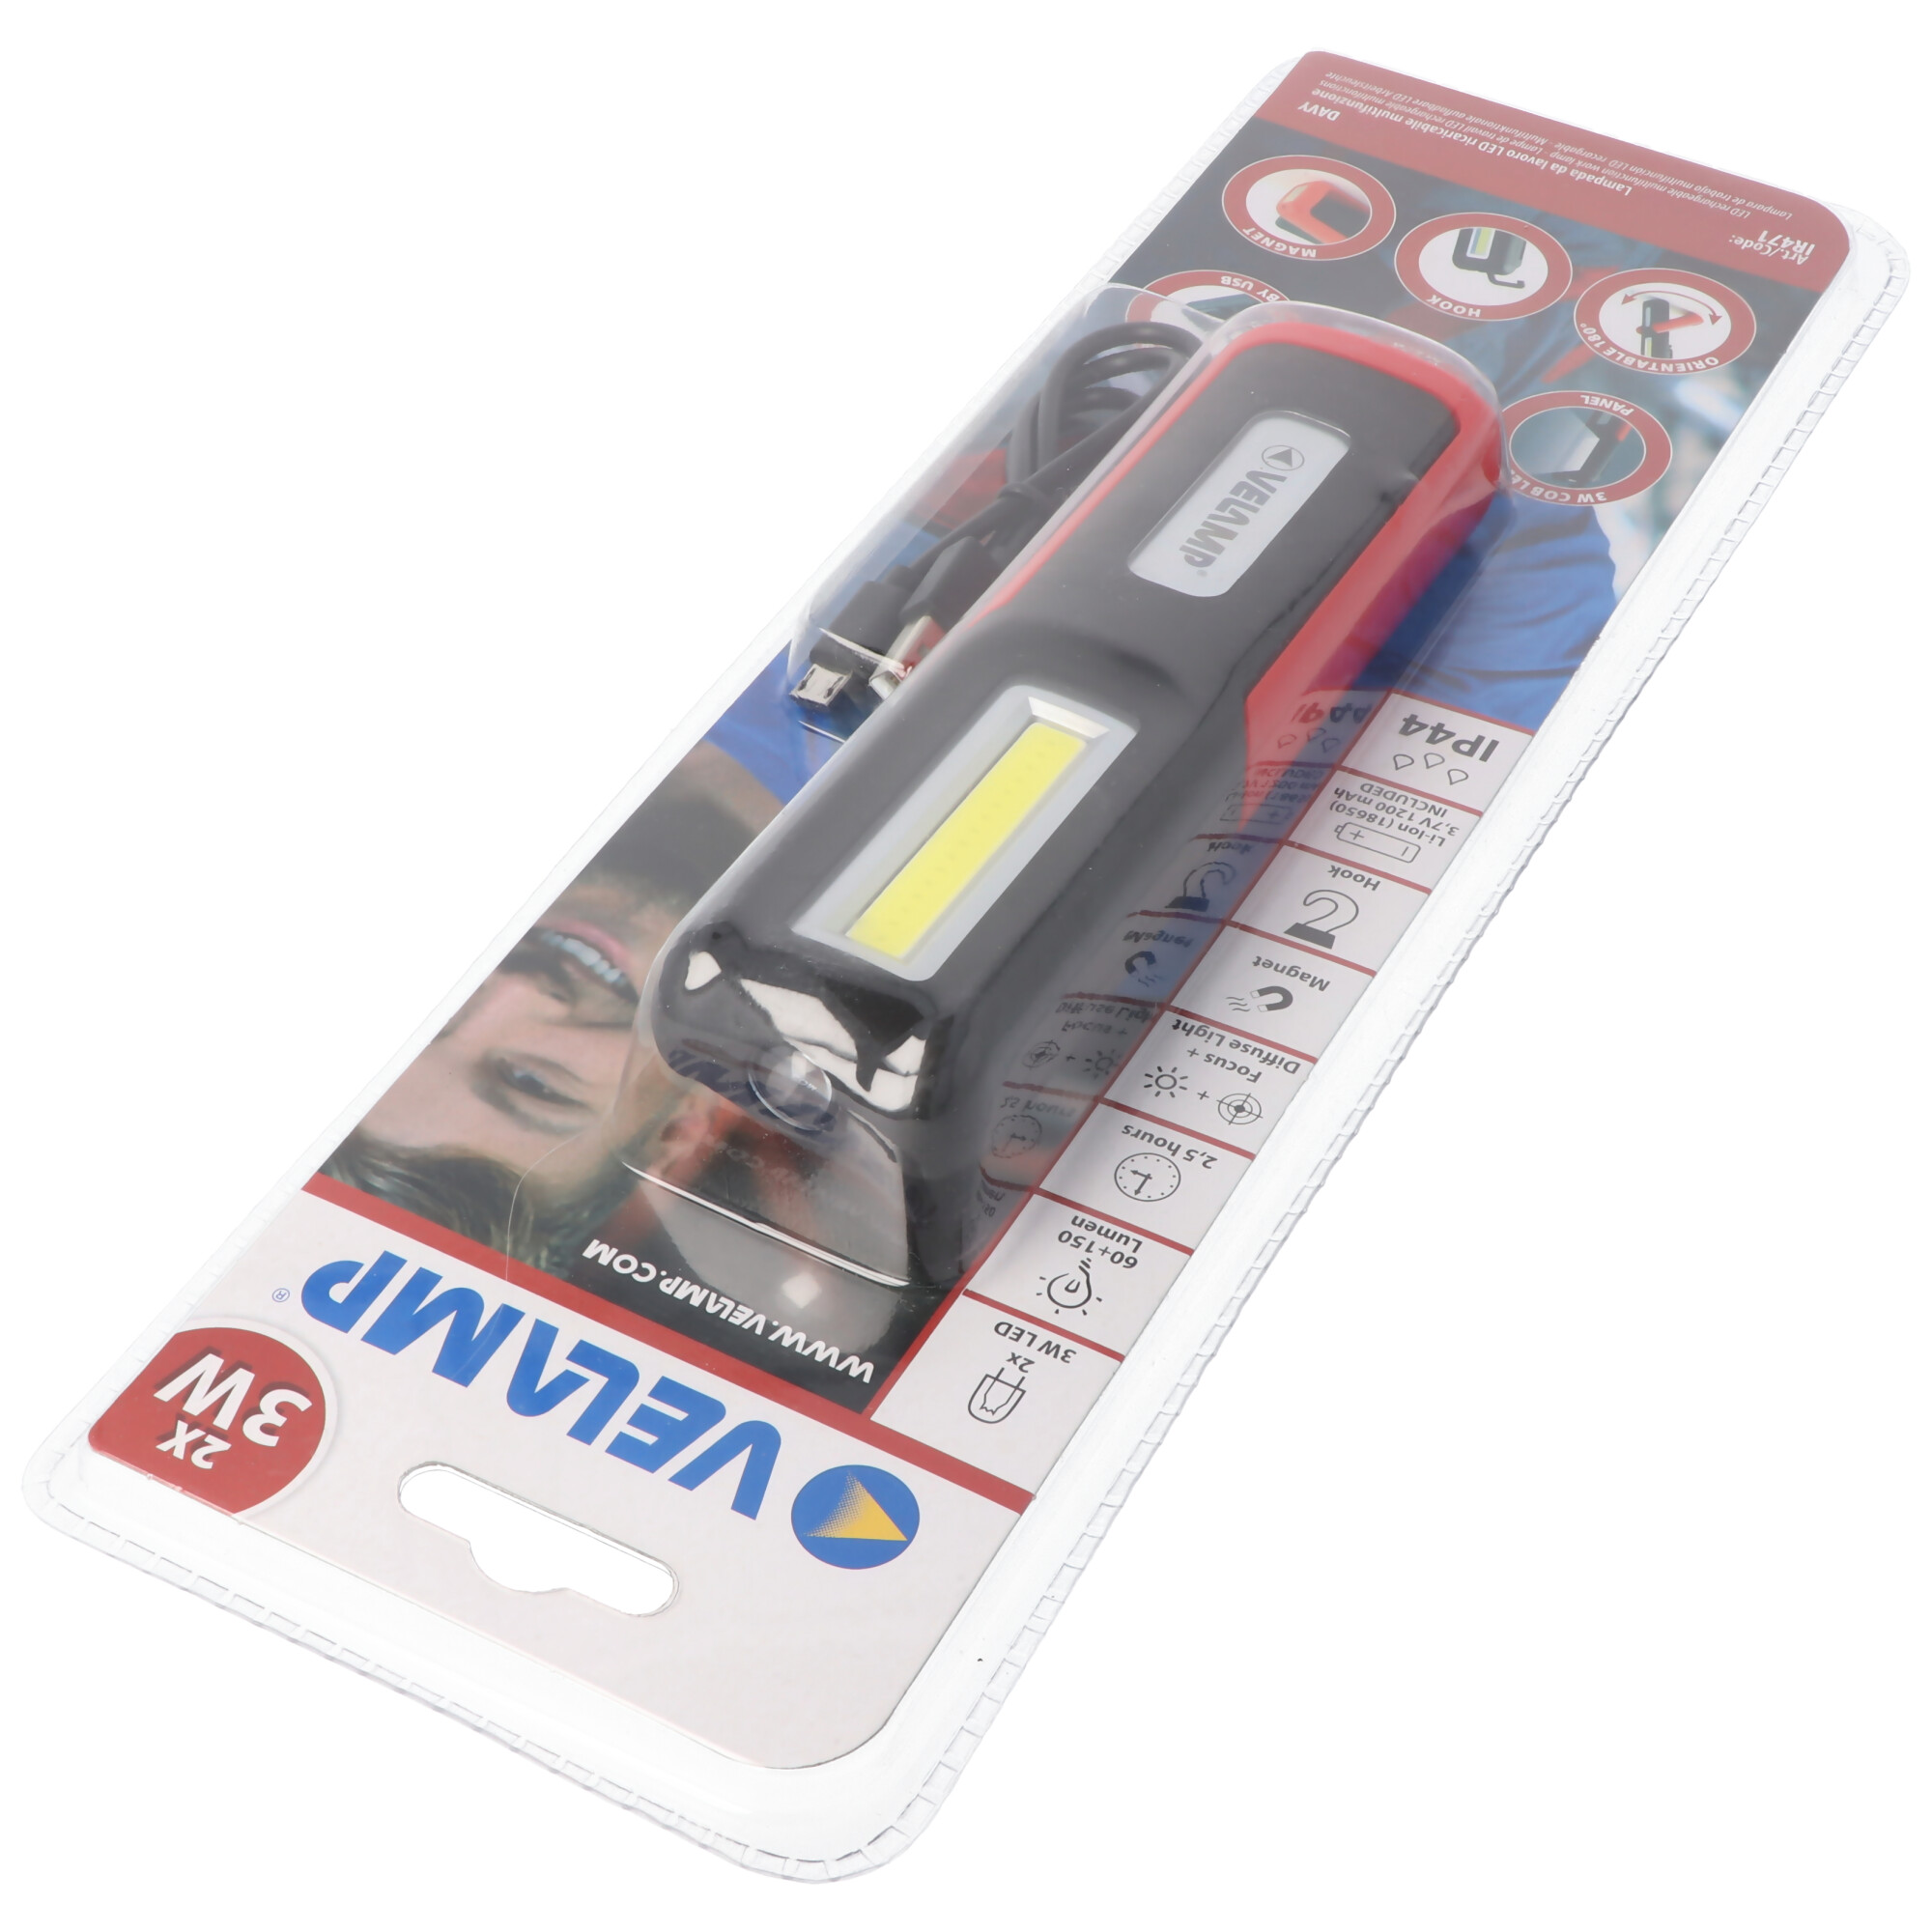 Multifunktionale LED-Arbeitsleuchte, wiederaufladbar per USB, 2in1 Arbeitsleuchte, Panelleuchte und Taschenlampe, mit Magnet und Haken